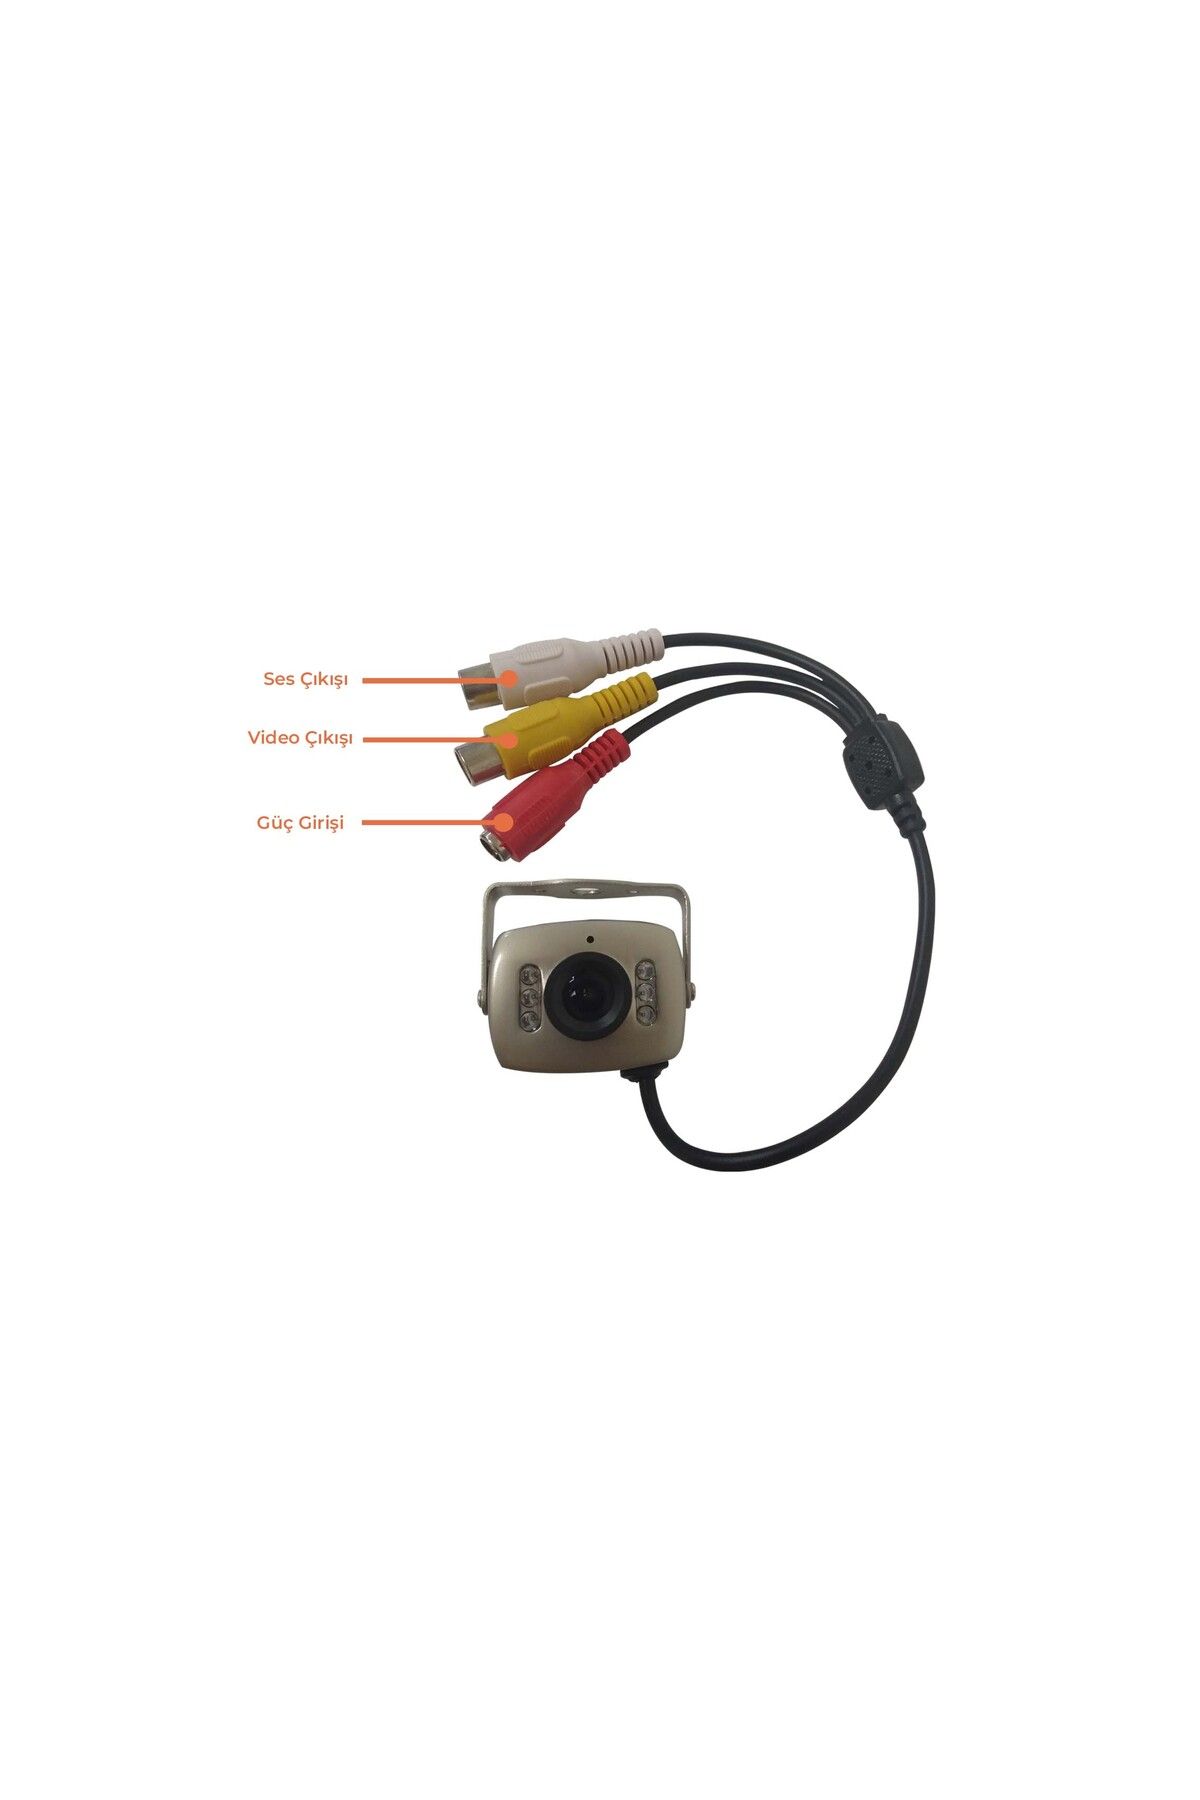 Area Güvenlik Sistemleri Analog Mini Araç Kamerası - 6 IR LED, HD Görüntü Kalitesi, Gündüz & Gece Modu